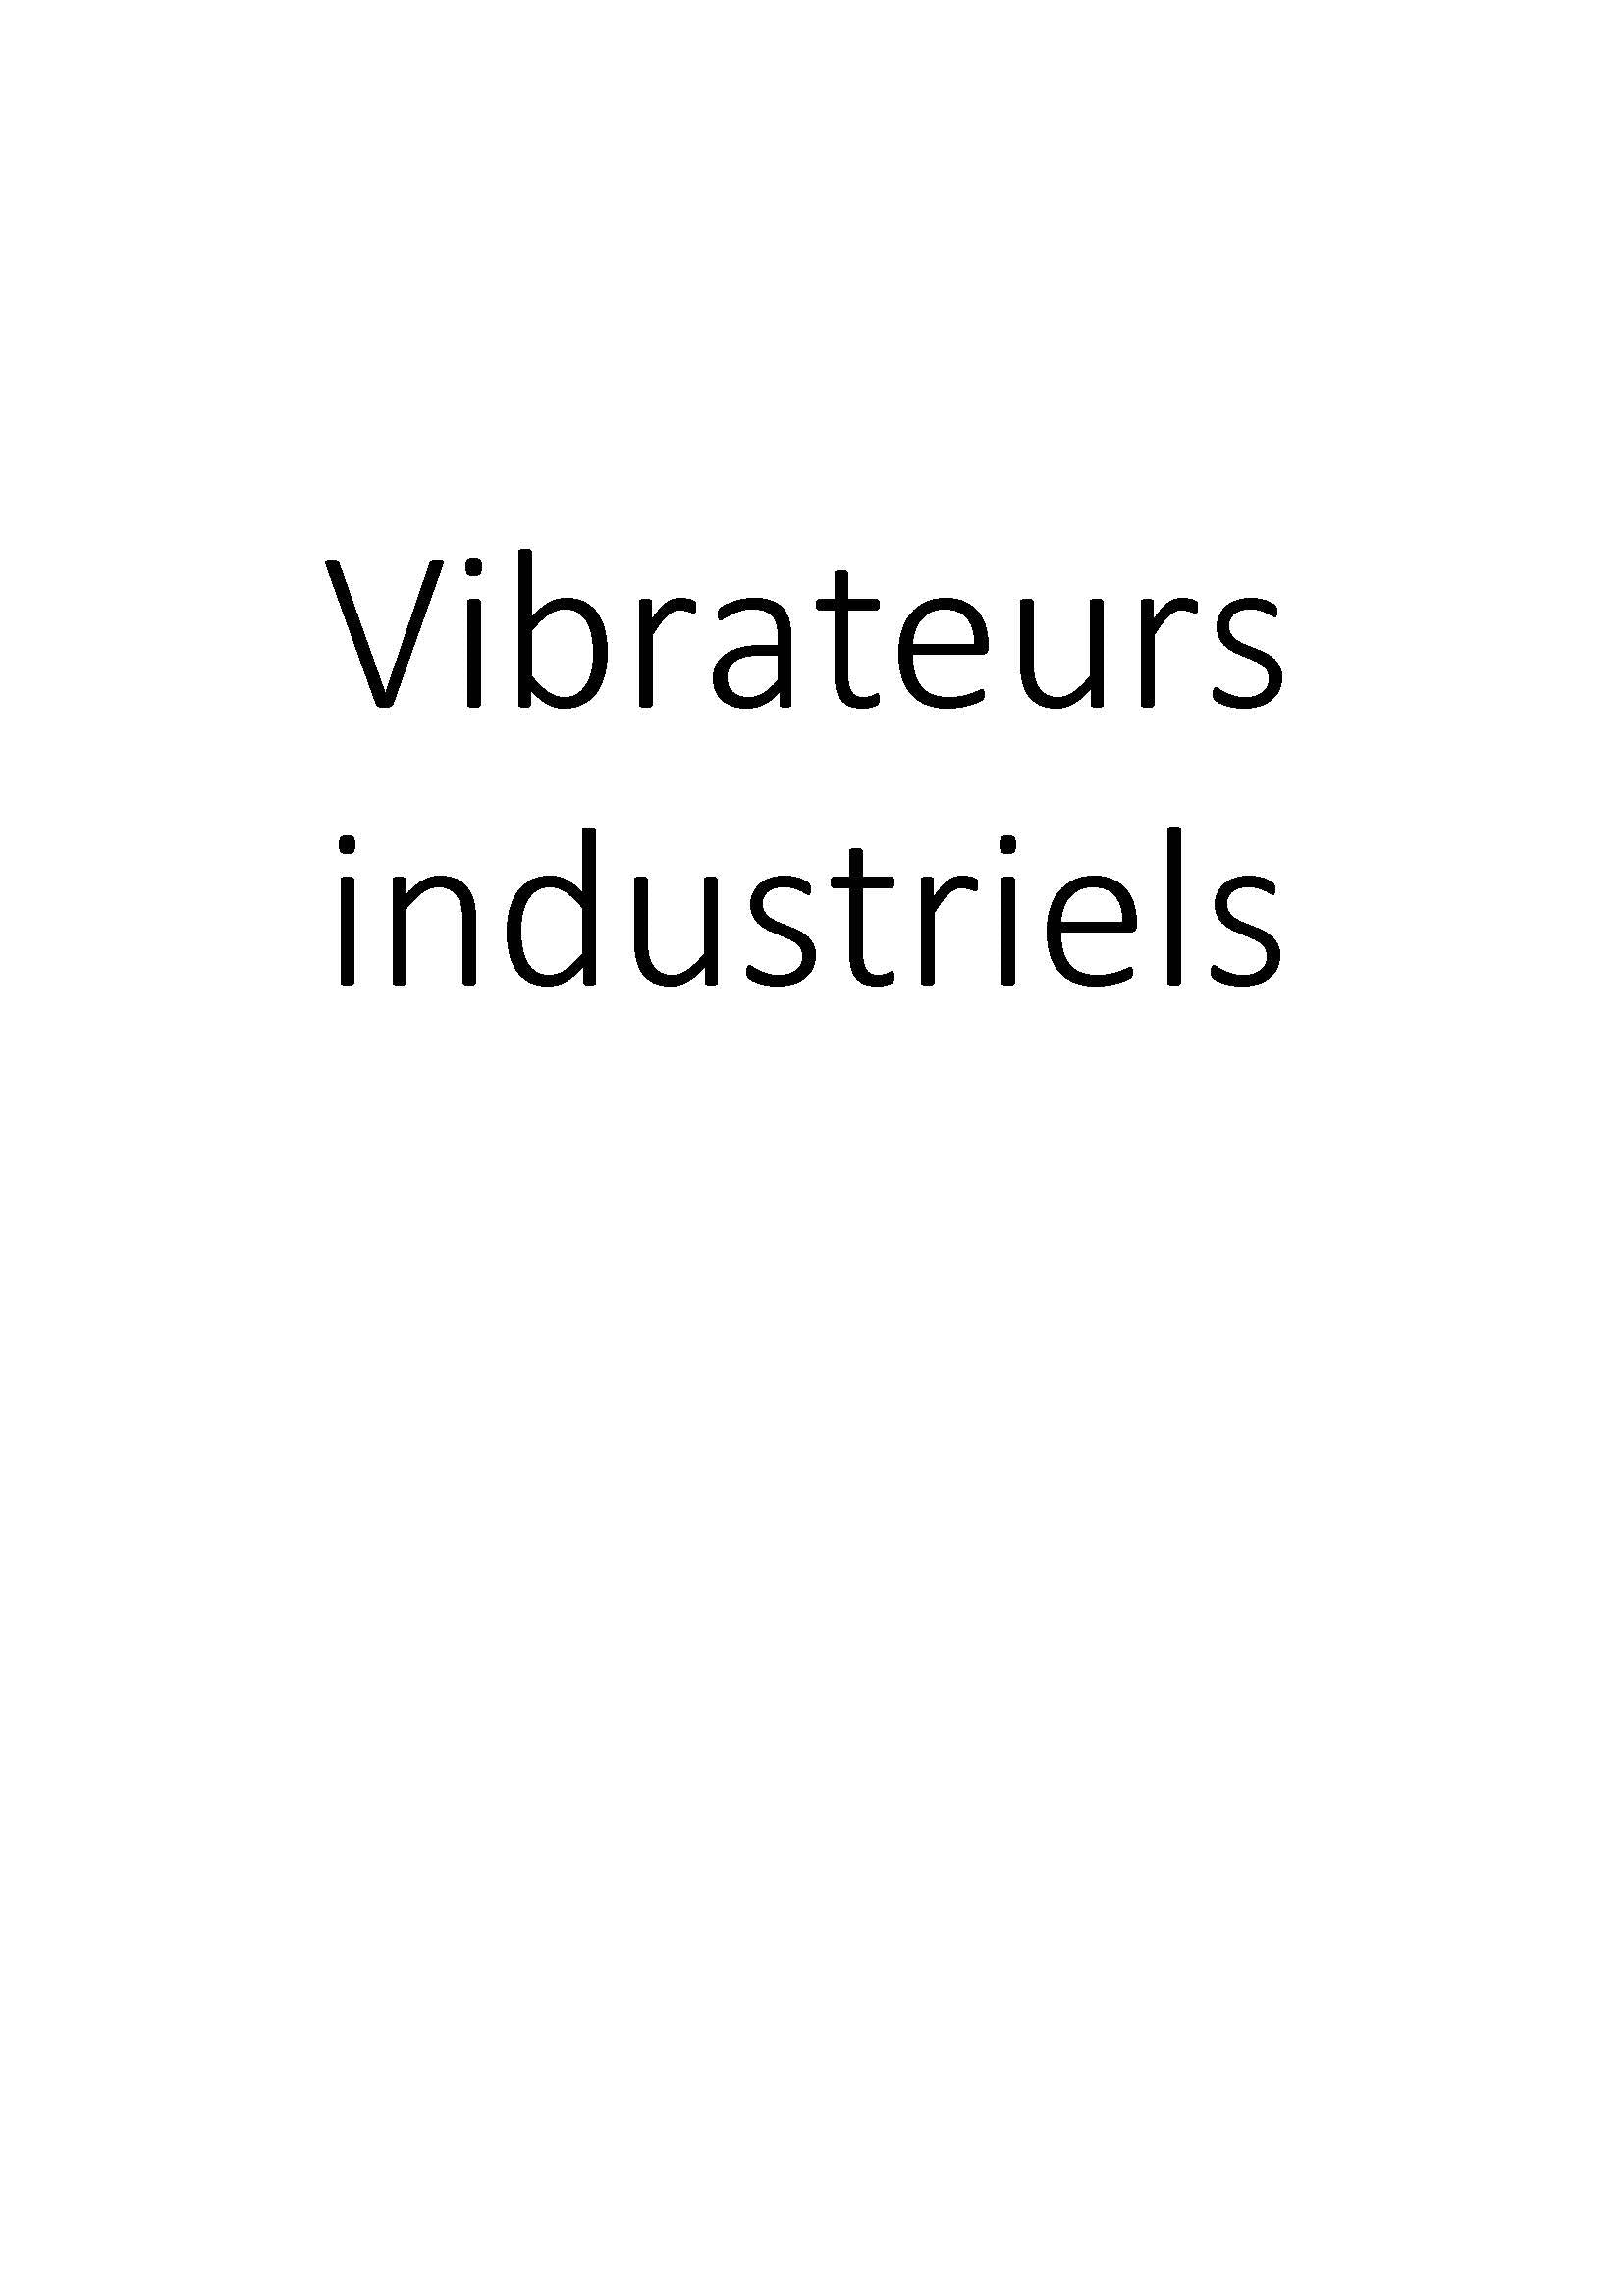 Vibrateurs industriels clicktofournisseur.com